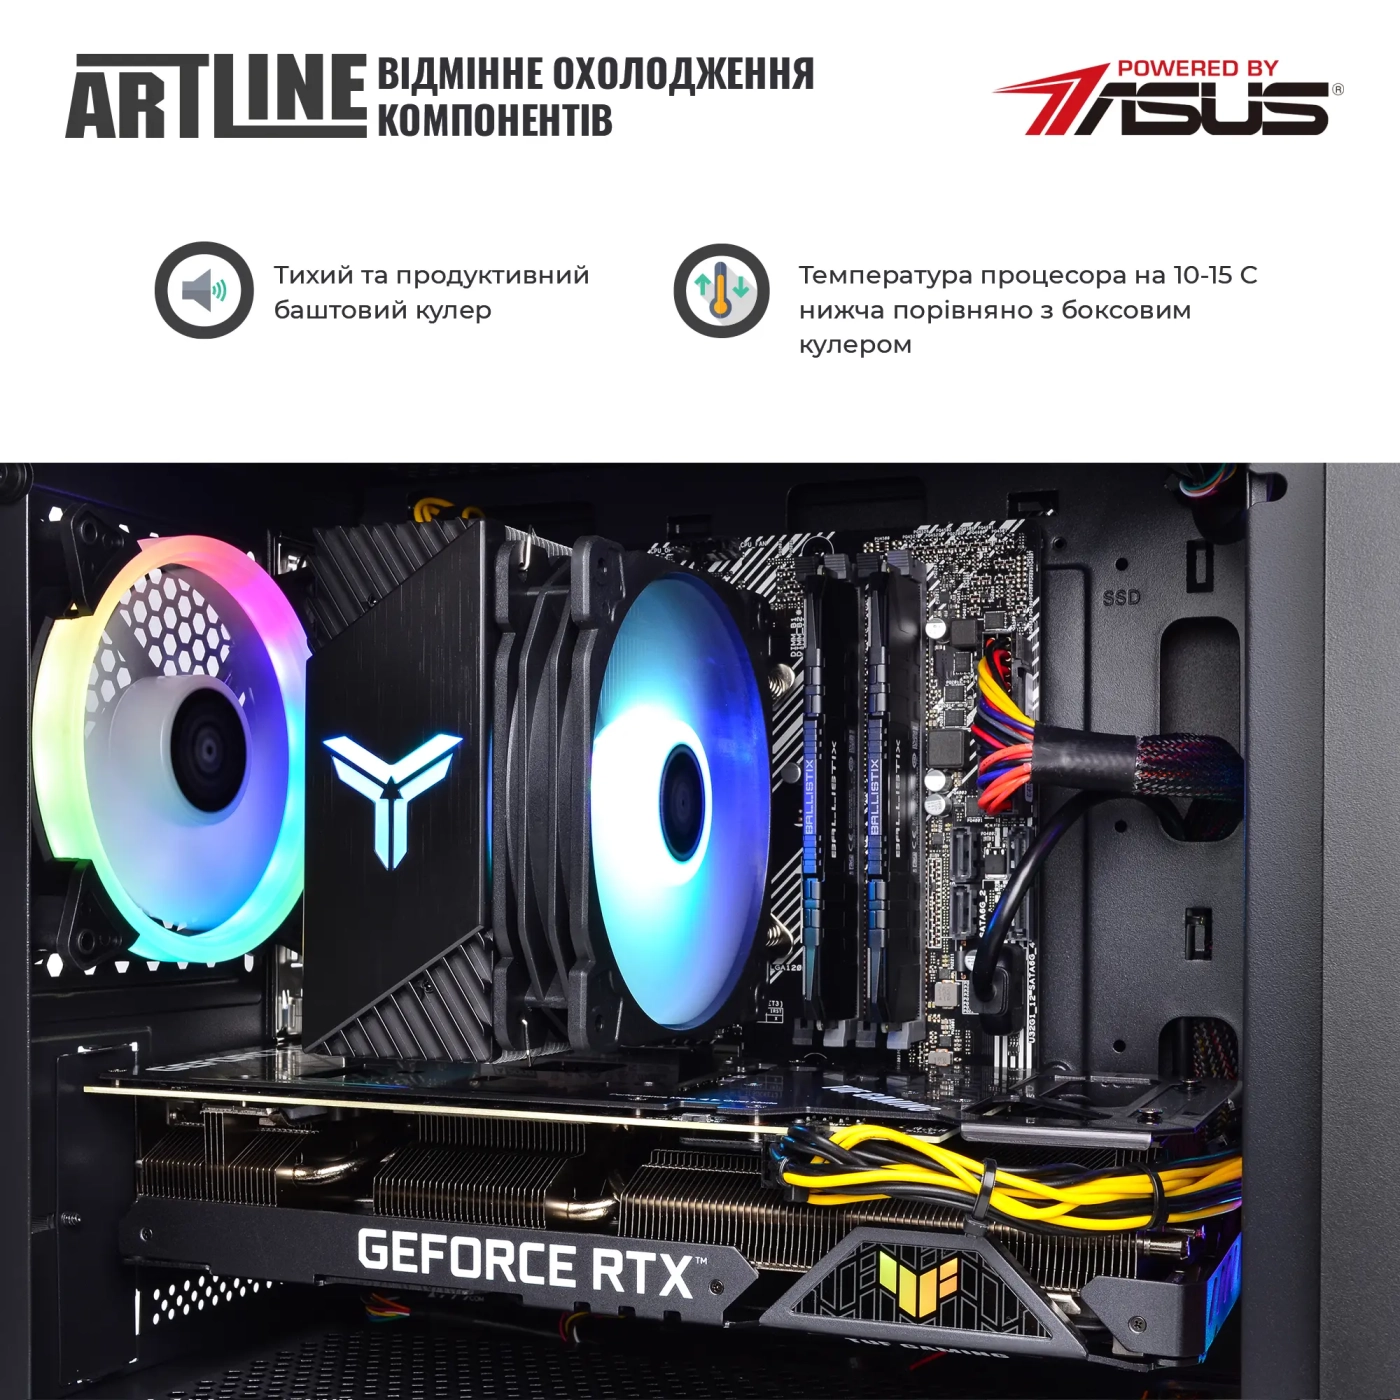 Купить Компьютер ARTLINE Gaming X83v17 - фото 4